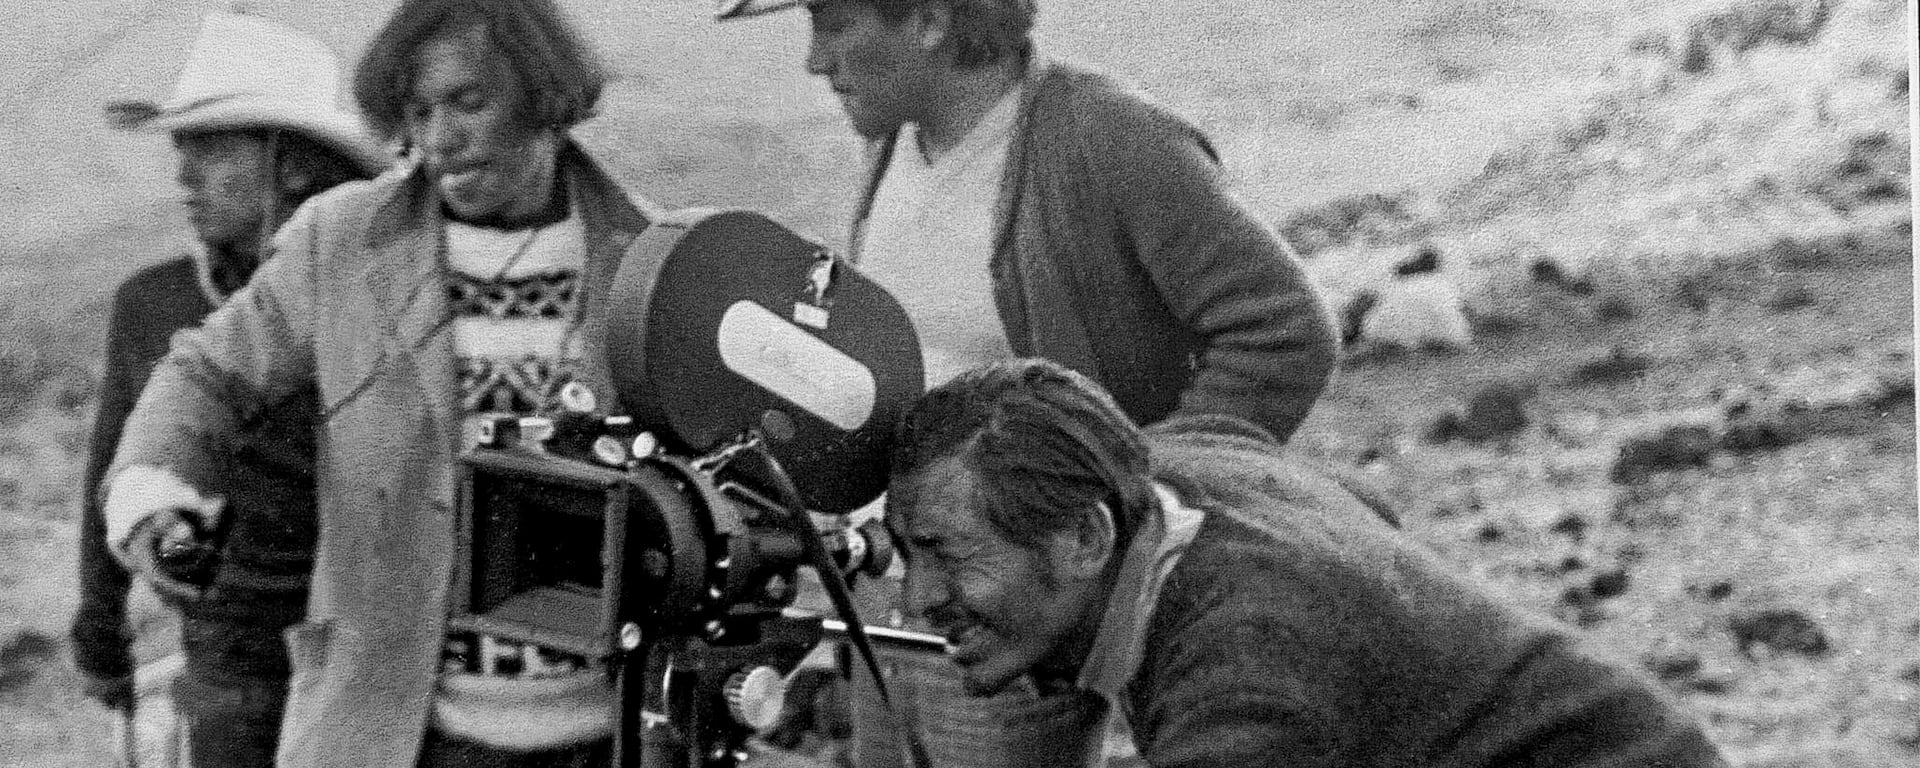 El legado del pionero del cine peruano: Manuel Chambi y su propuesta de un cine con identidad y visión local